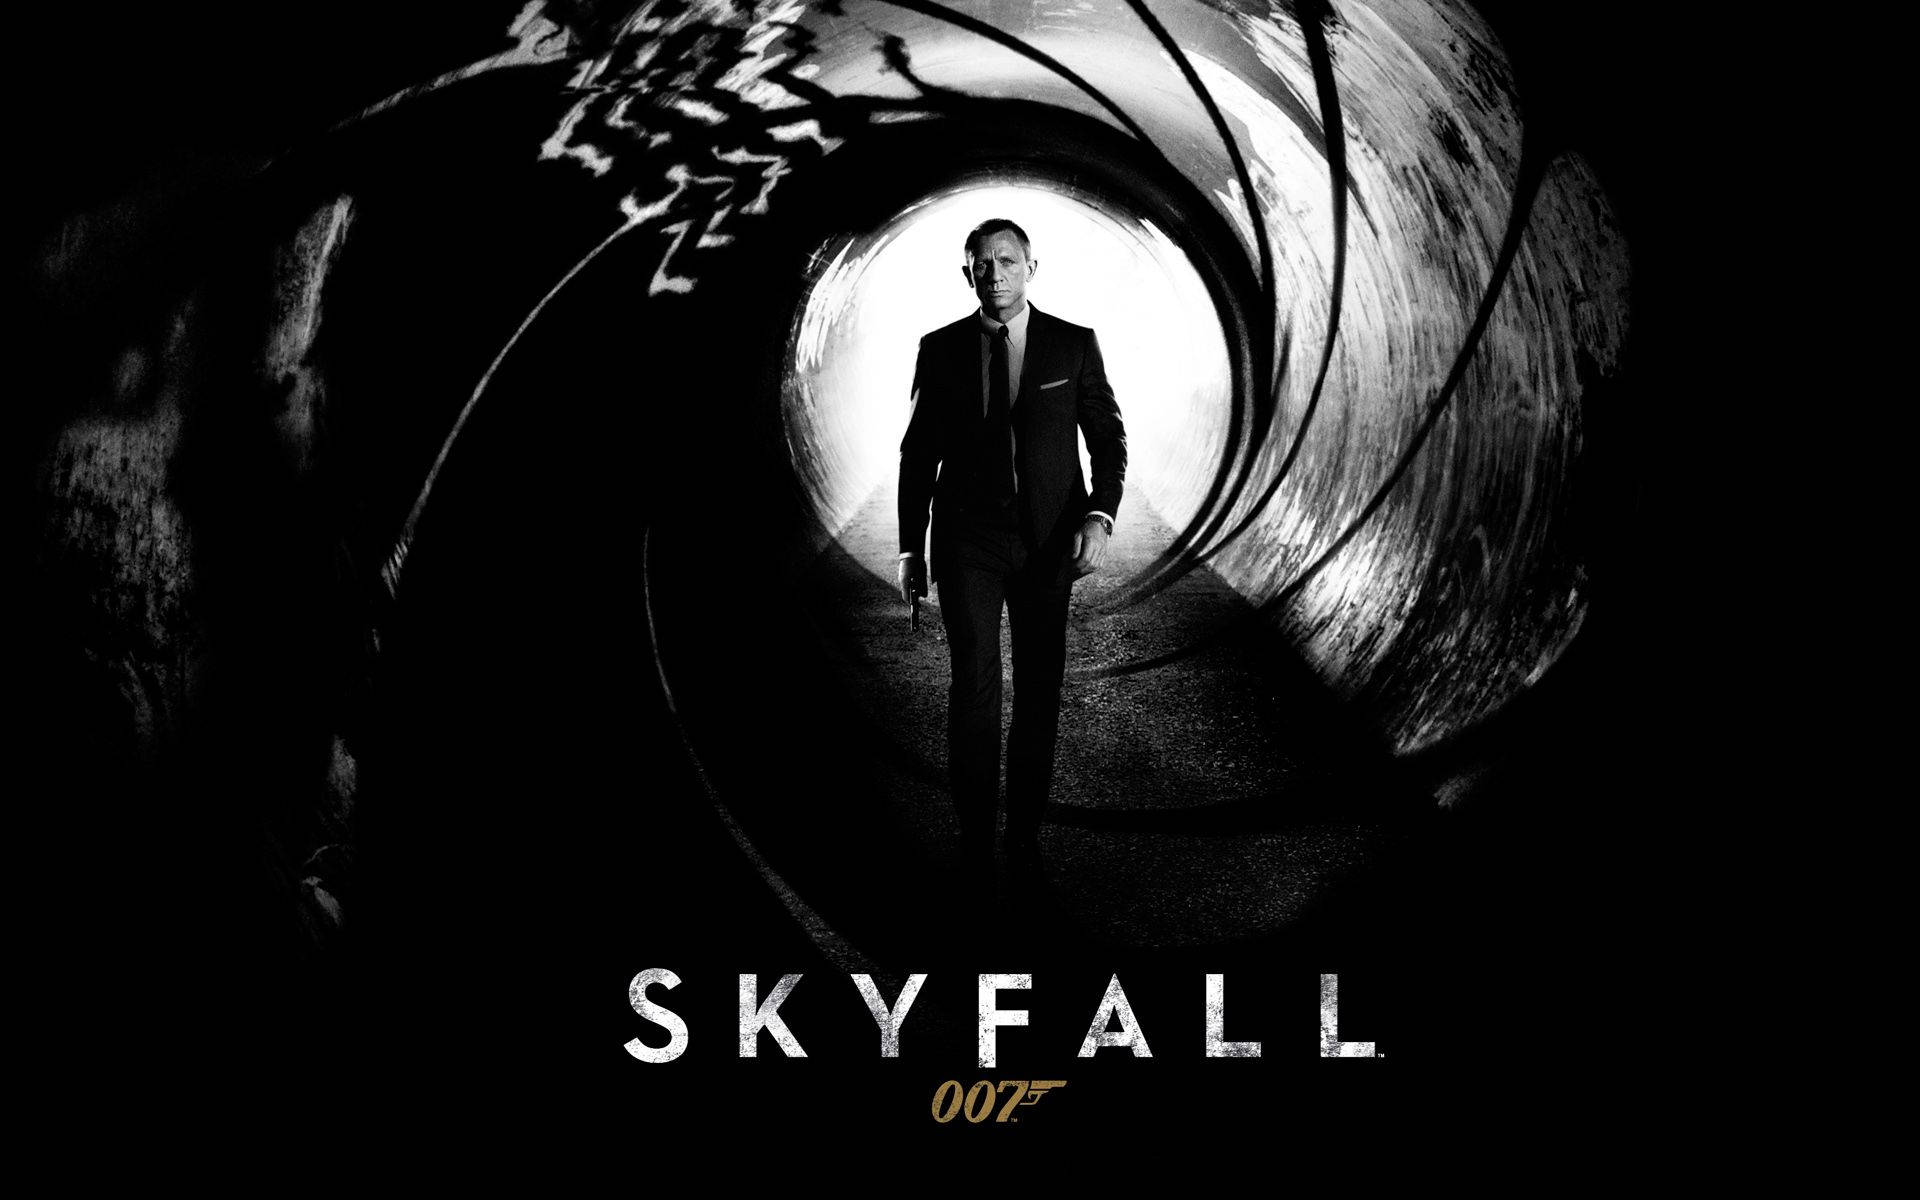 Skyfall Digital Movie Cover Background